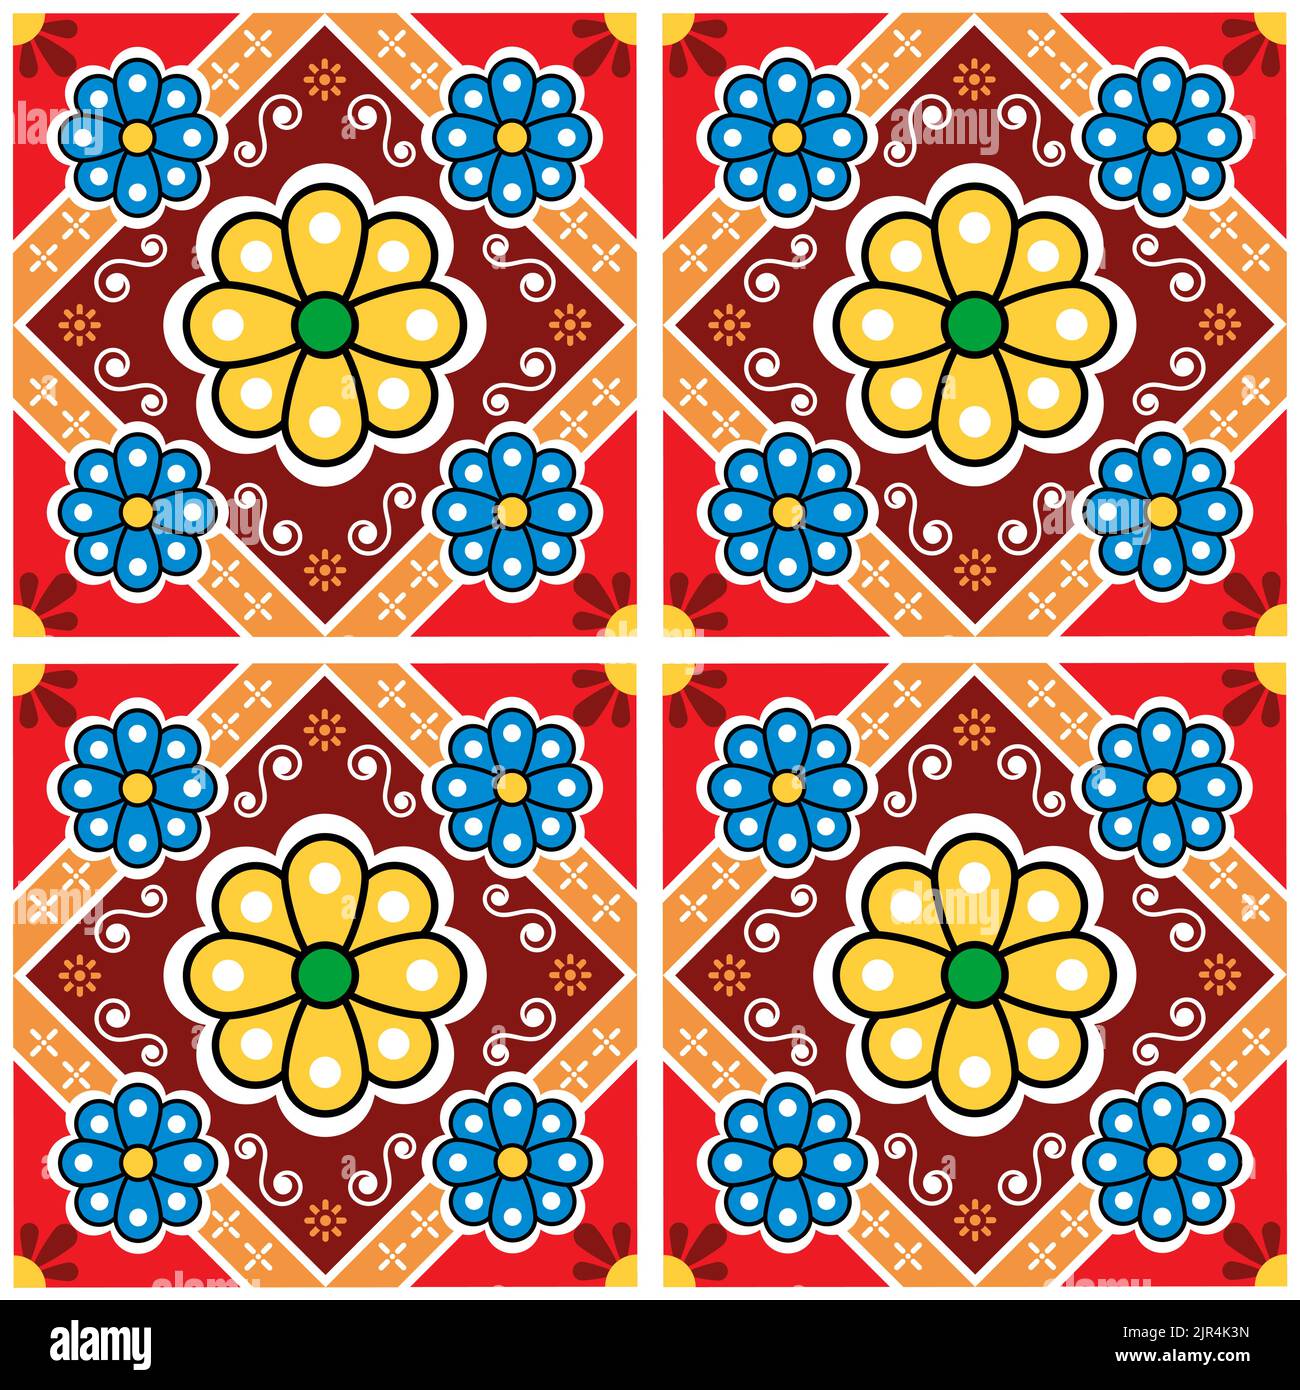 Florale Fliesen Nahtloses Vektor-Muster inspiriert von der Volkskunst aus Mexiko - talavera, perfekt für Tapeten, Textilien oder Stoffdrucke Stock Vektor